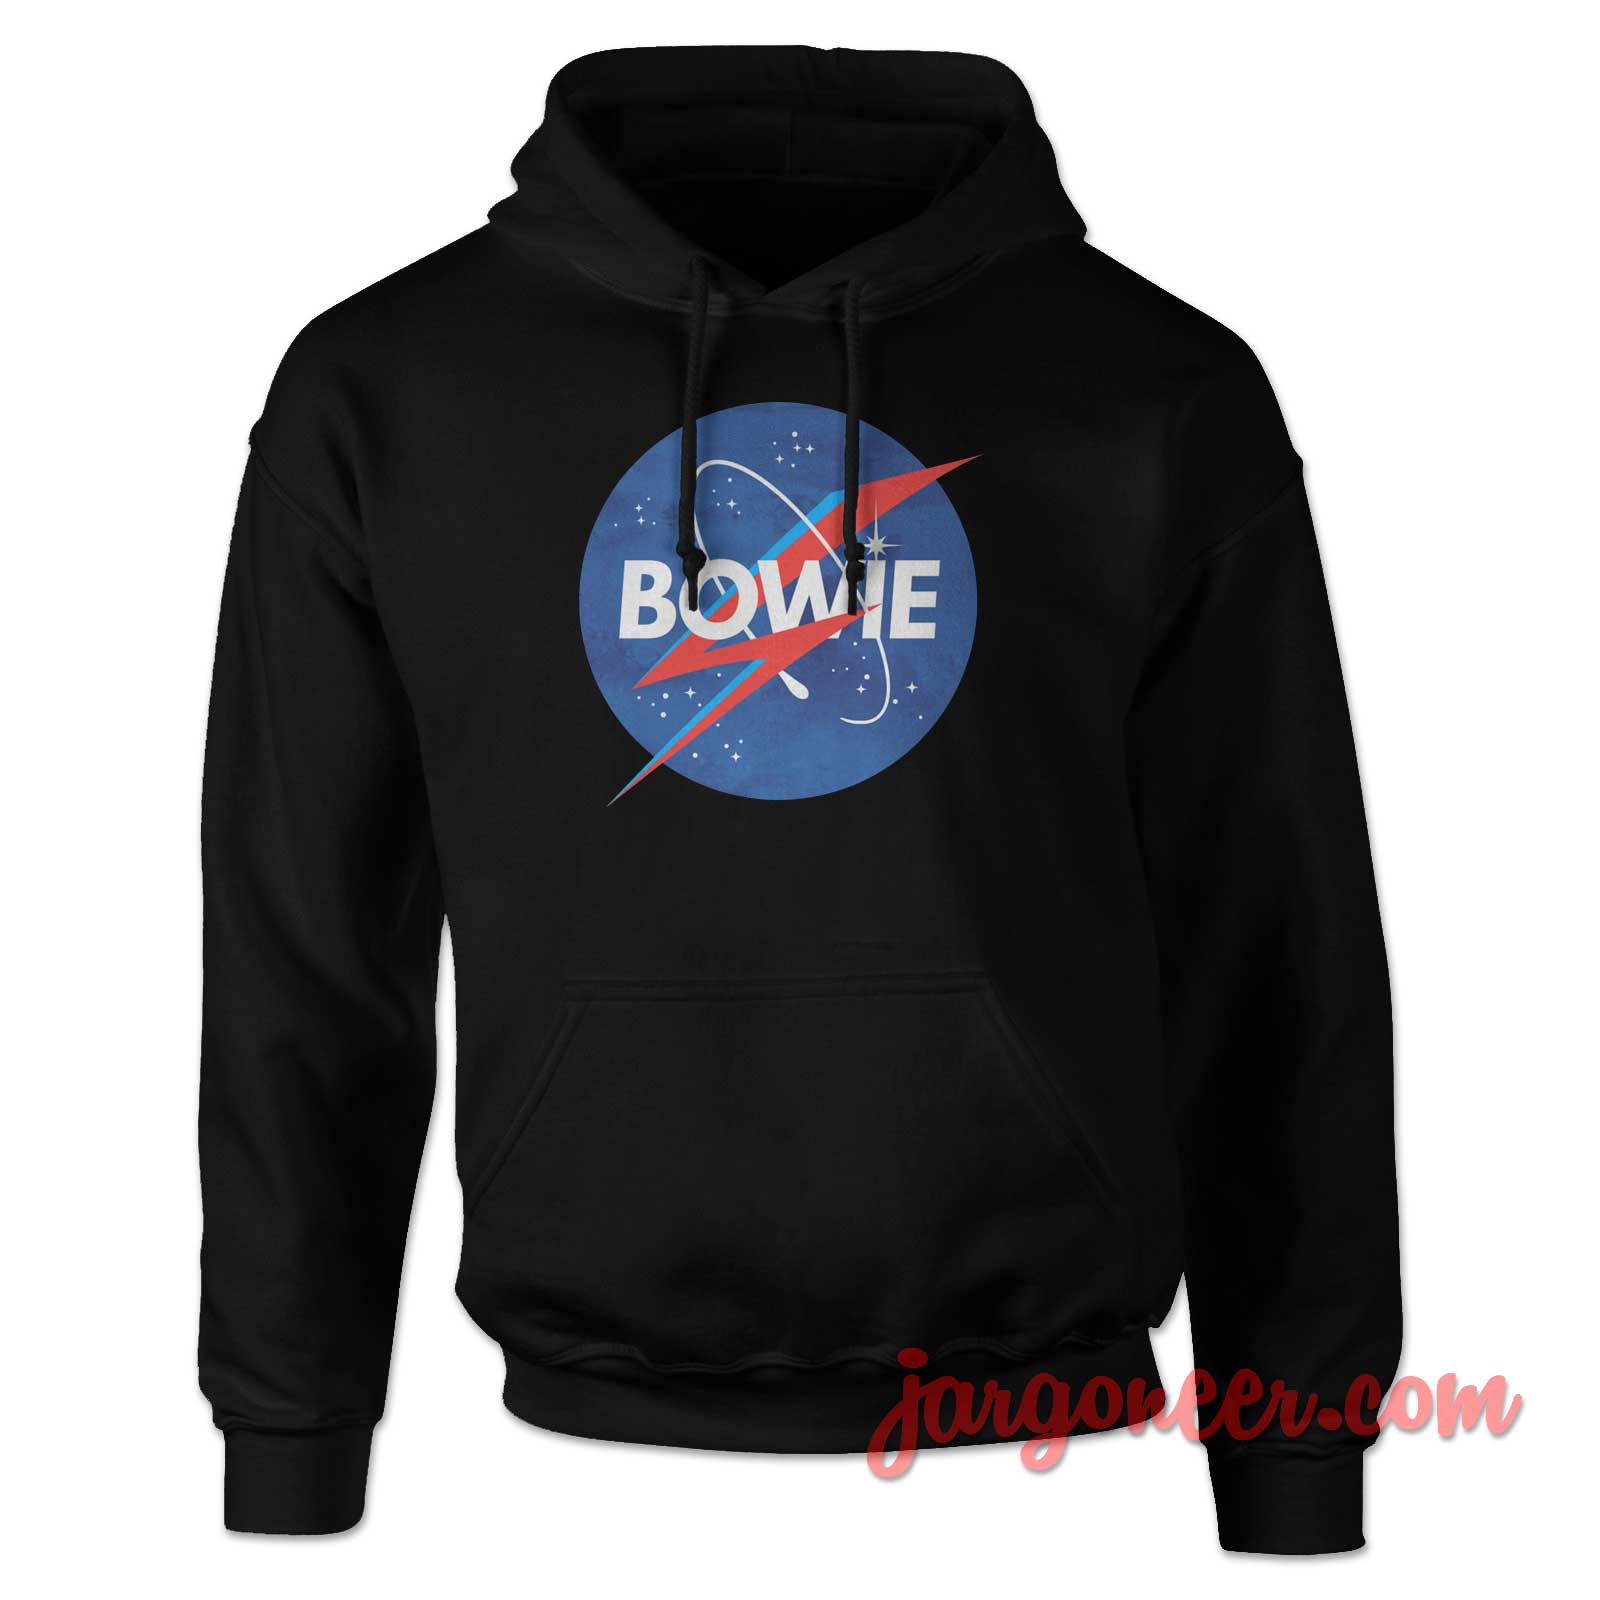 Bowie Nasa Parody 2 - Shop Unique Graphic Cool Shirt Designs